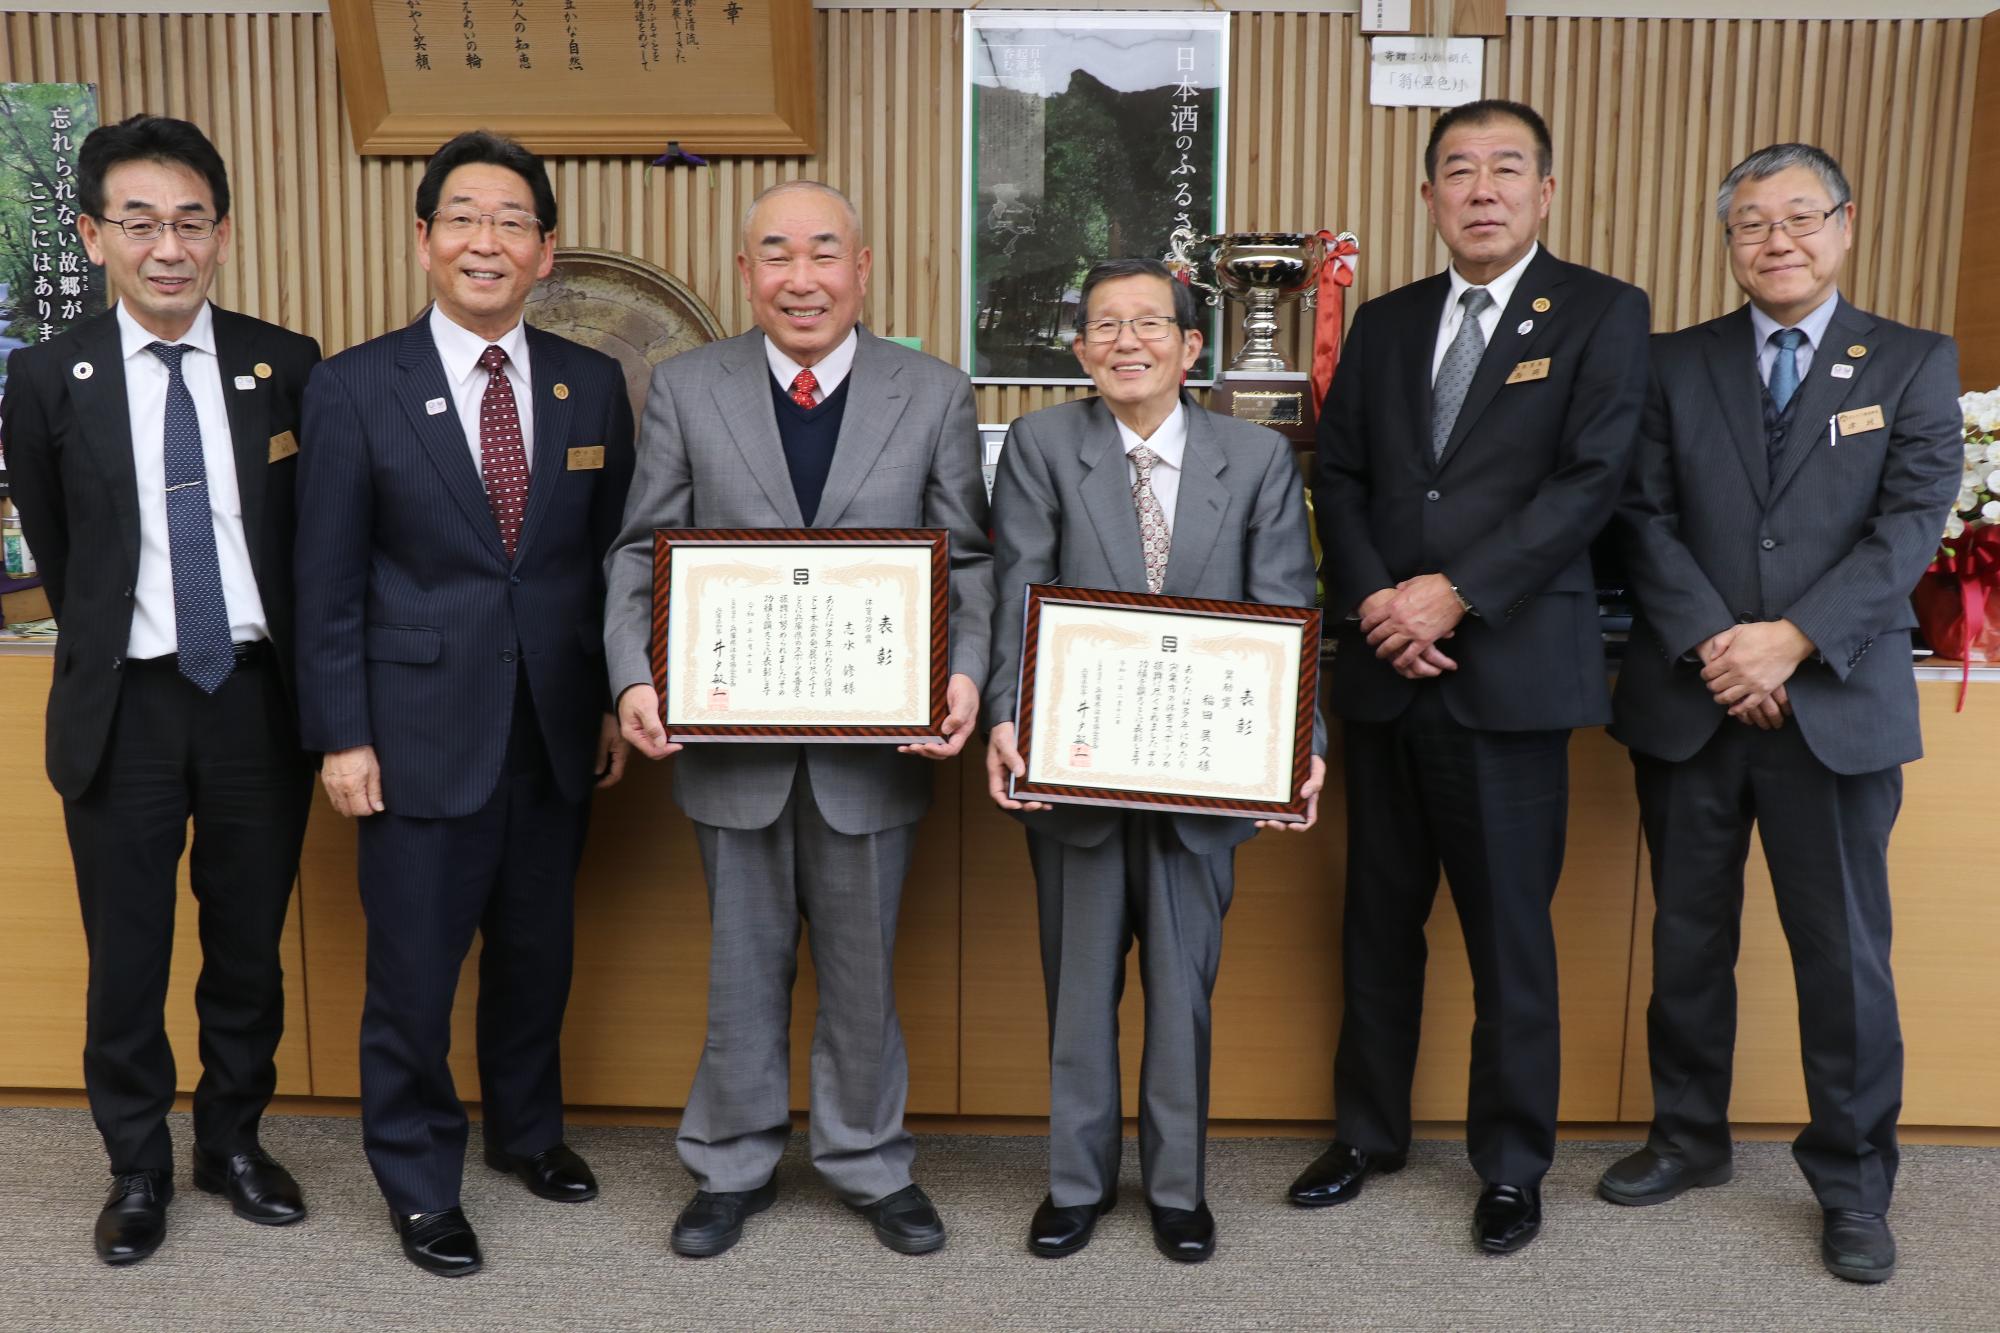 県体育功労賞と奨励賞を受賞した市体育協会の志水会長と稲田顧問が賞状をそれぞれ手に持ち、市長らと並んで笑っている写真